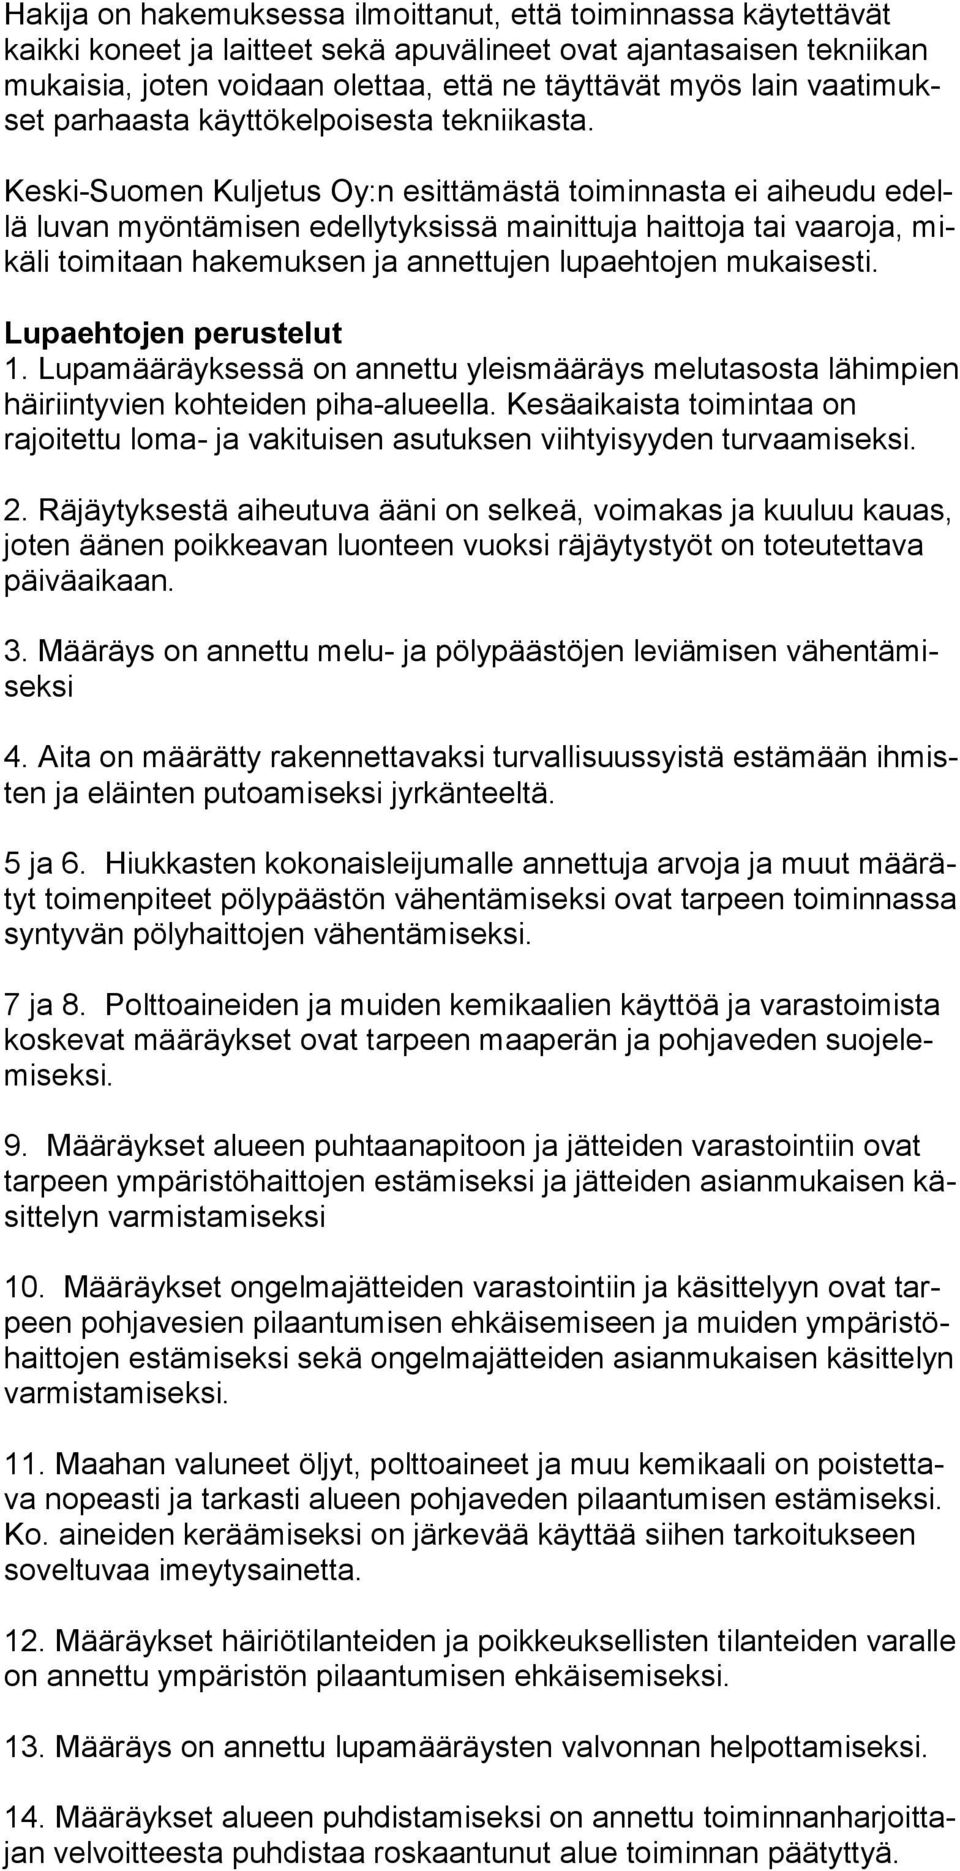 Keski-Suomen Kuljetus Oy:n esittämästä toiminnasta ei aiheudu edellä lu van myöntämisen edellytyksissä mainittuja haittoja tai vaaroja, mikä li toi mi taan hakemuksen ja annettujen lupaehtojen